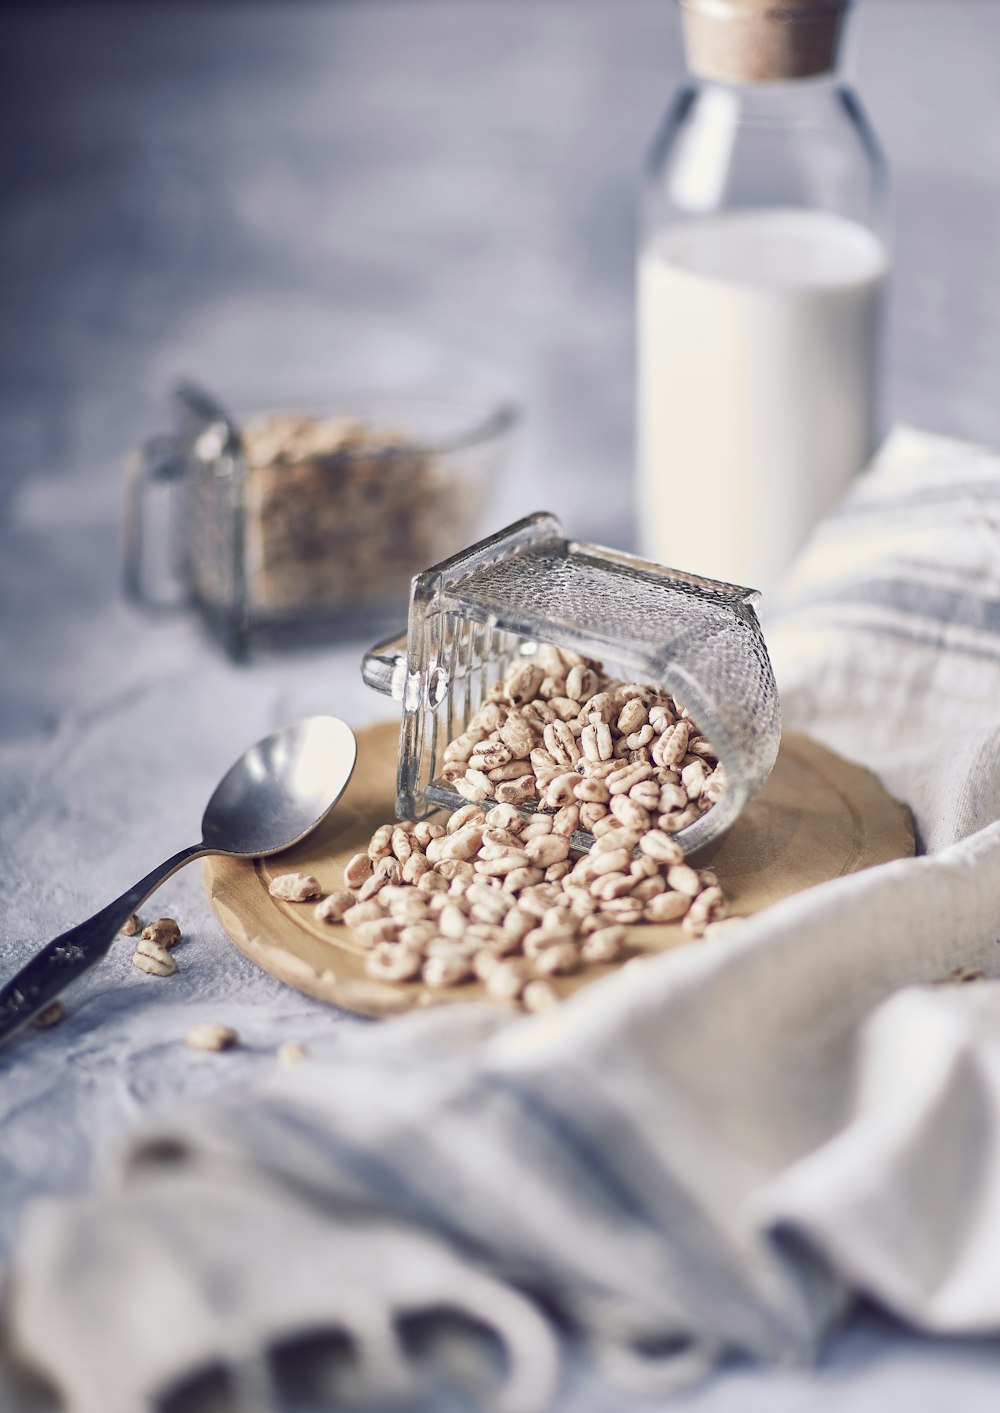 brown peanuts on stainless steel spoon beside white ceramic mug